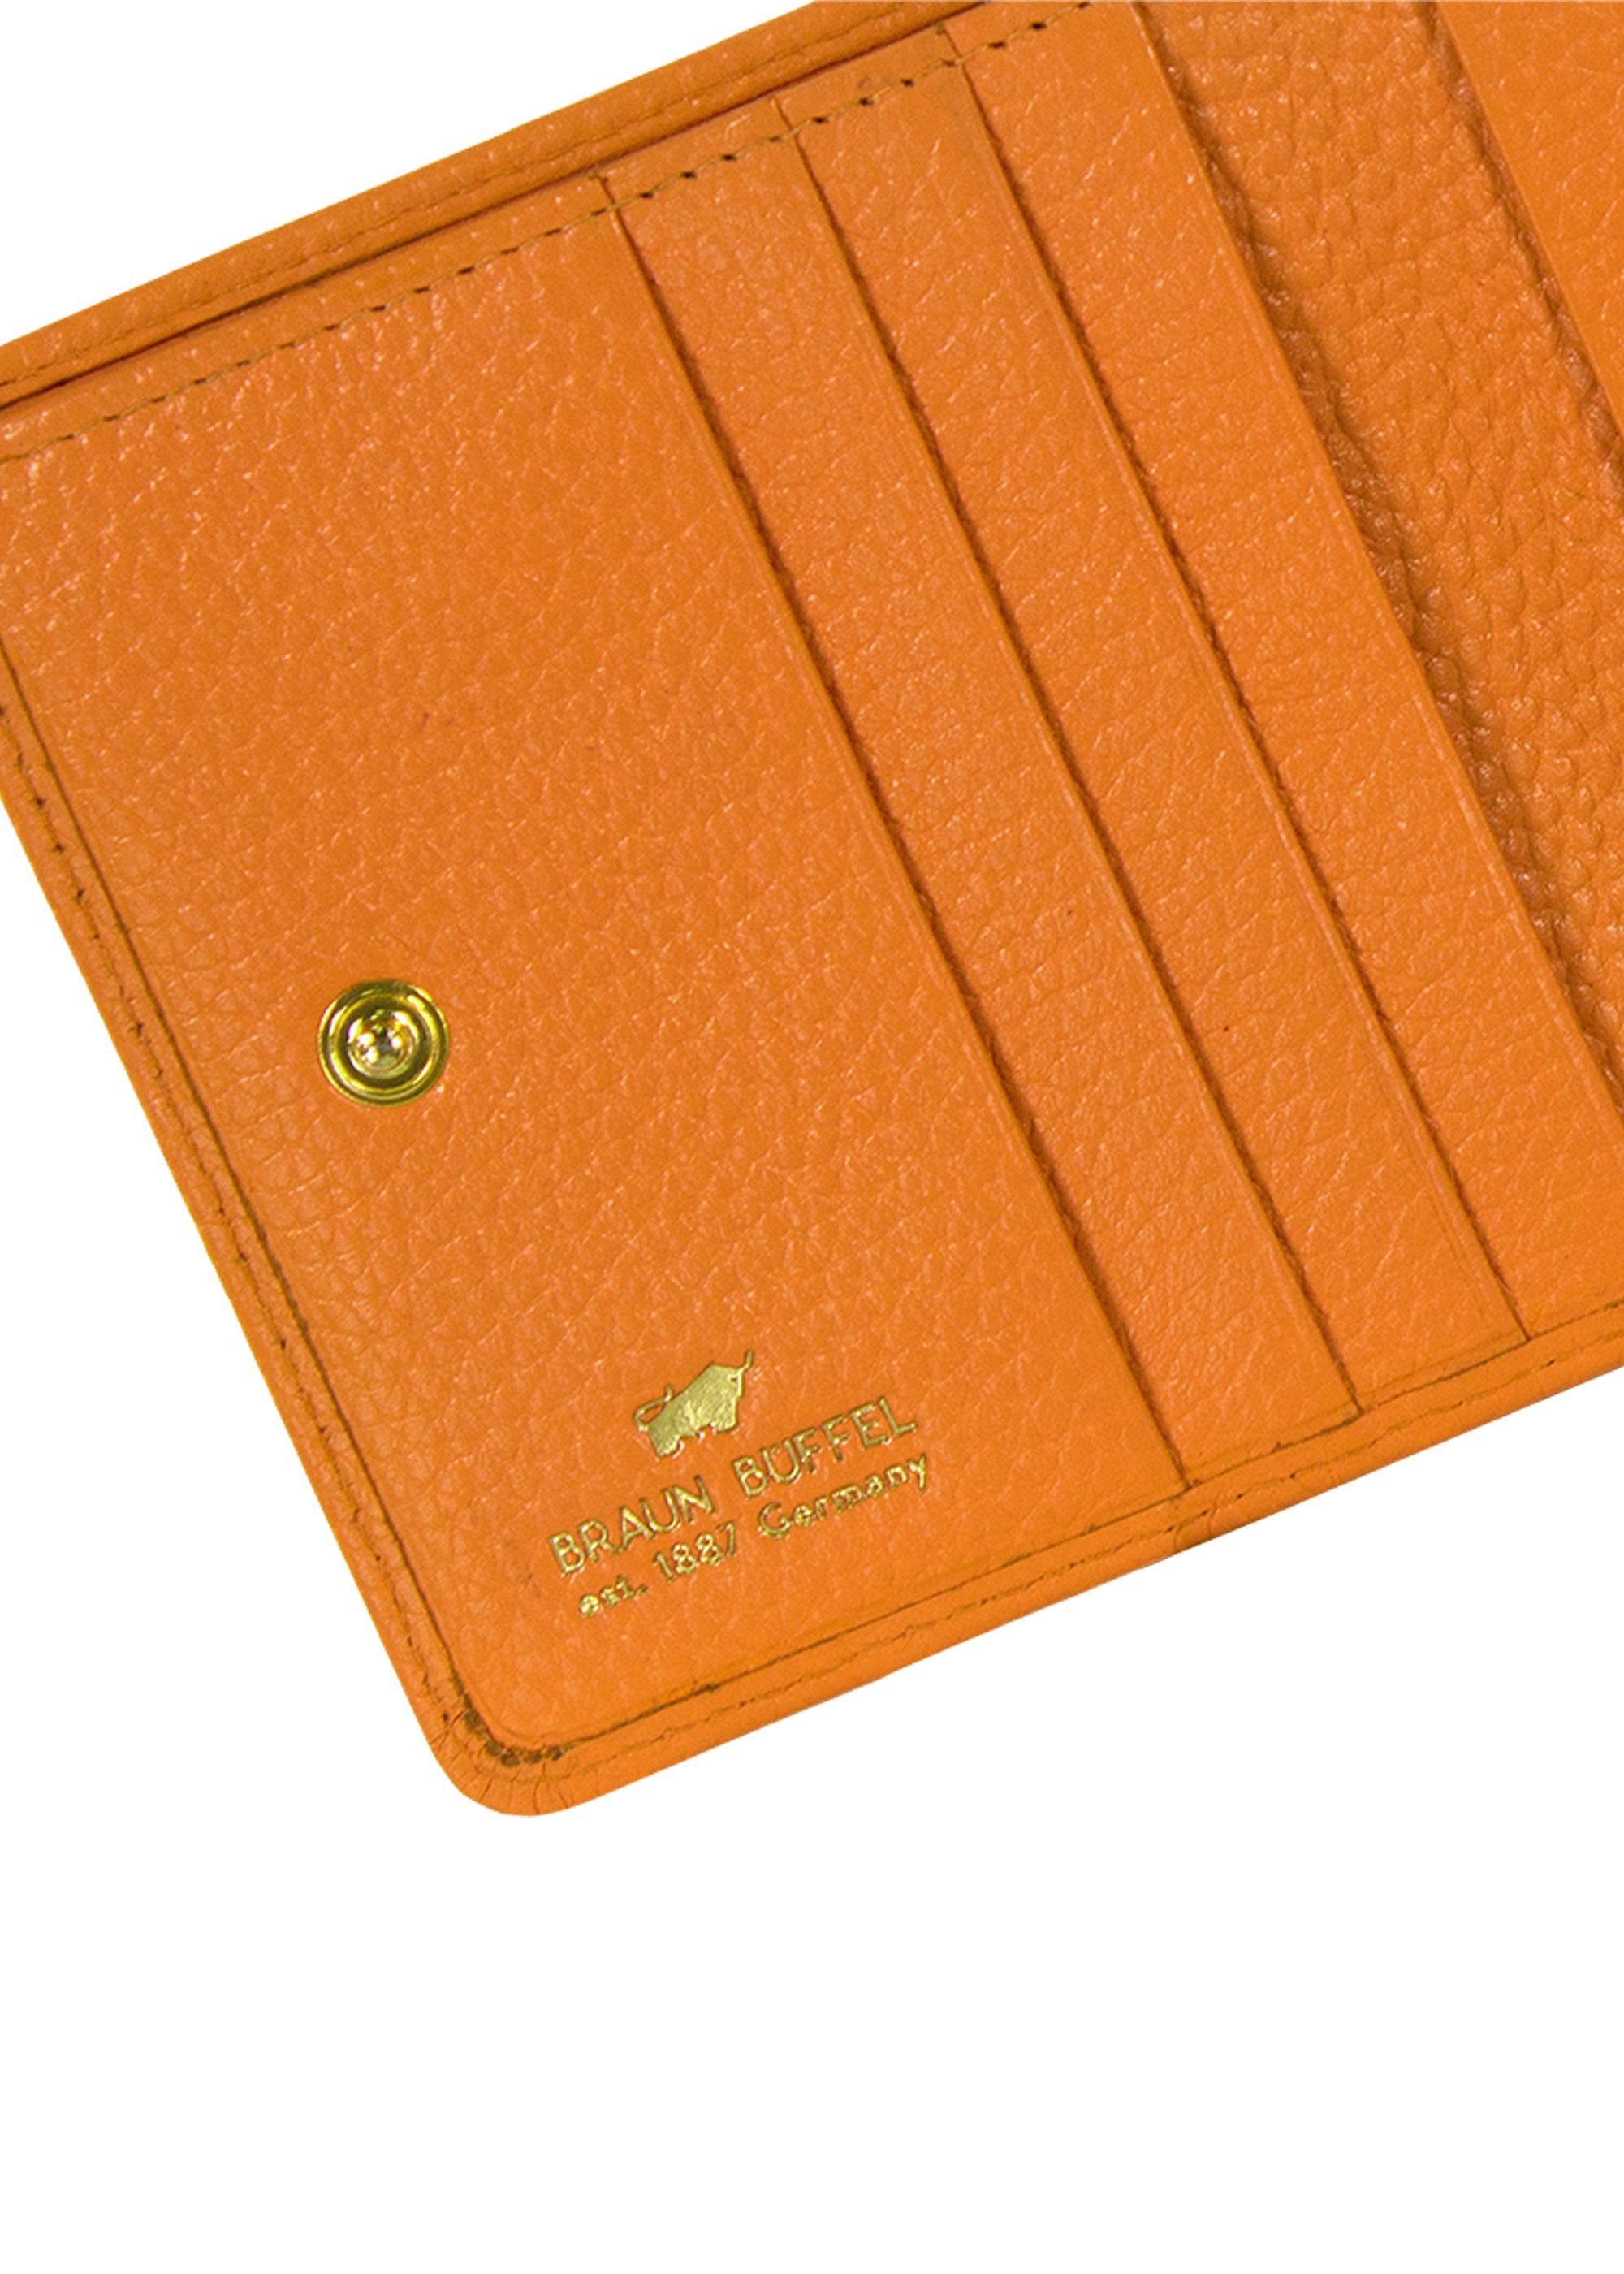 und Asti mit Braun orange RFID-Schutz Büffel RV-Geldbörse Geldbörse 6CS, goldenen S Metalldetails